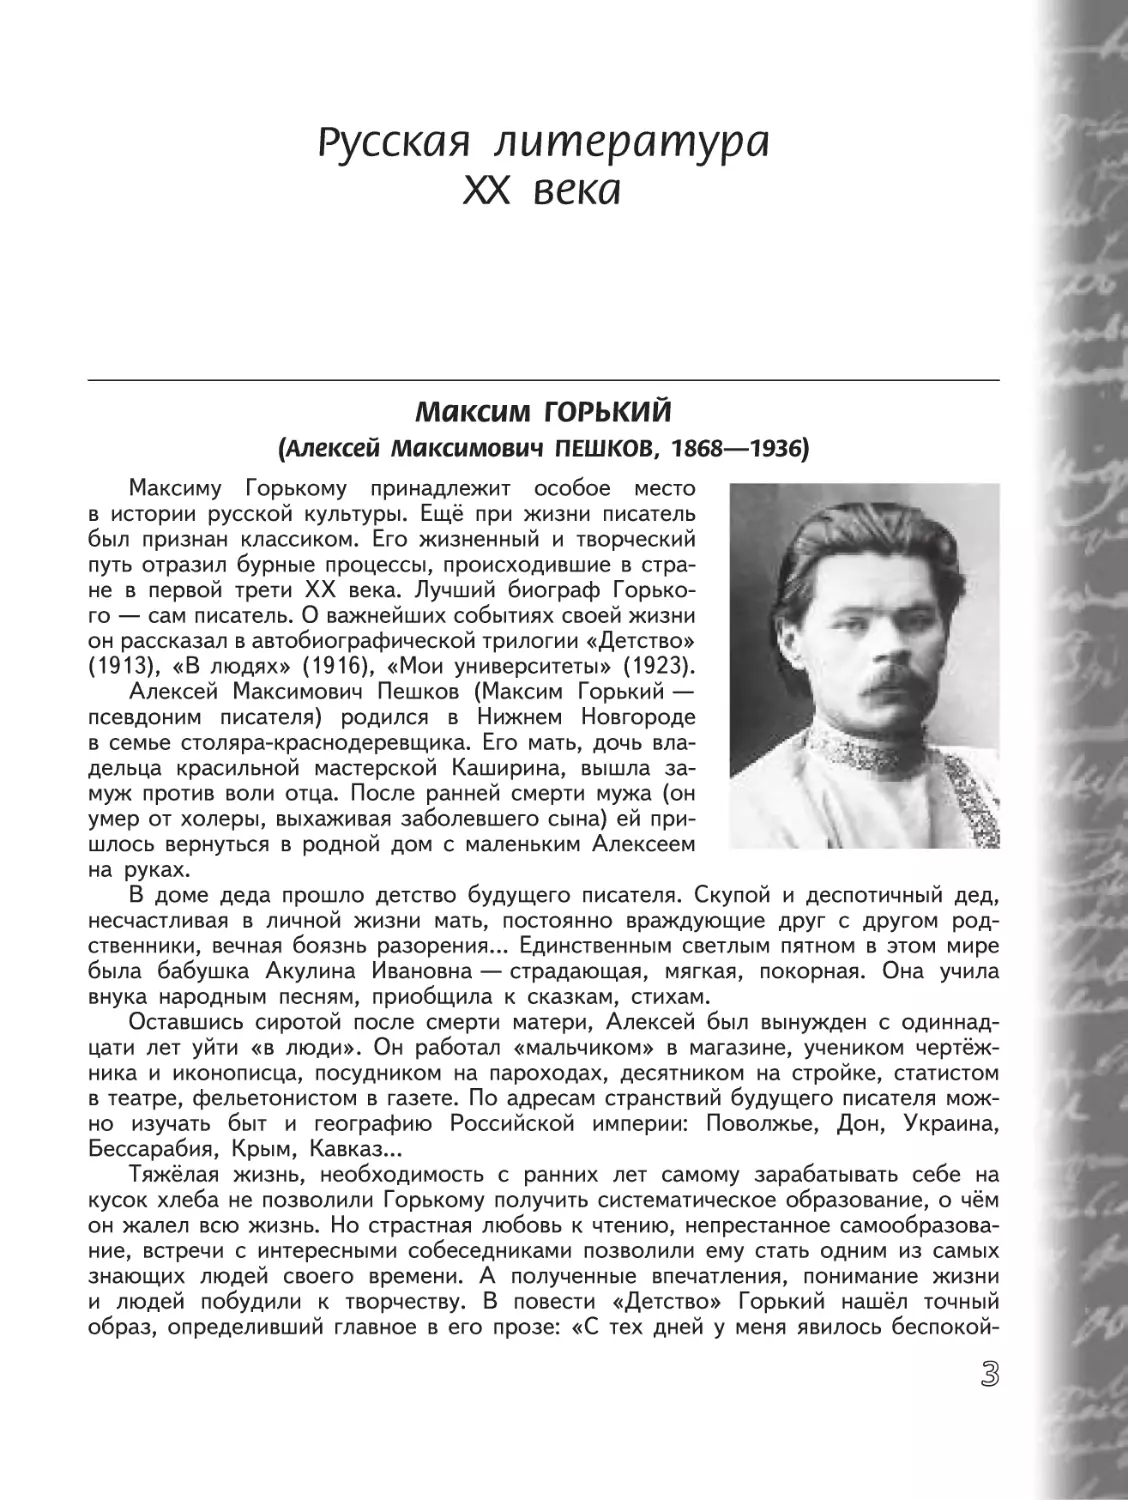 Русская литература XX века
М. Горький